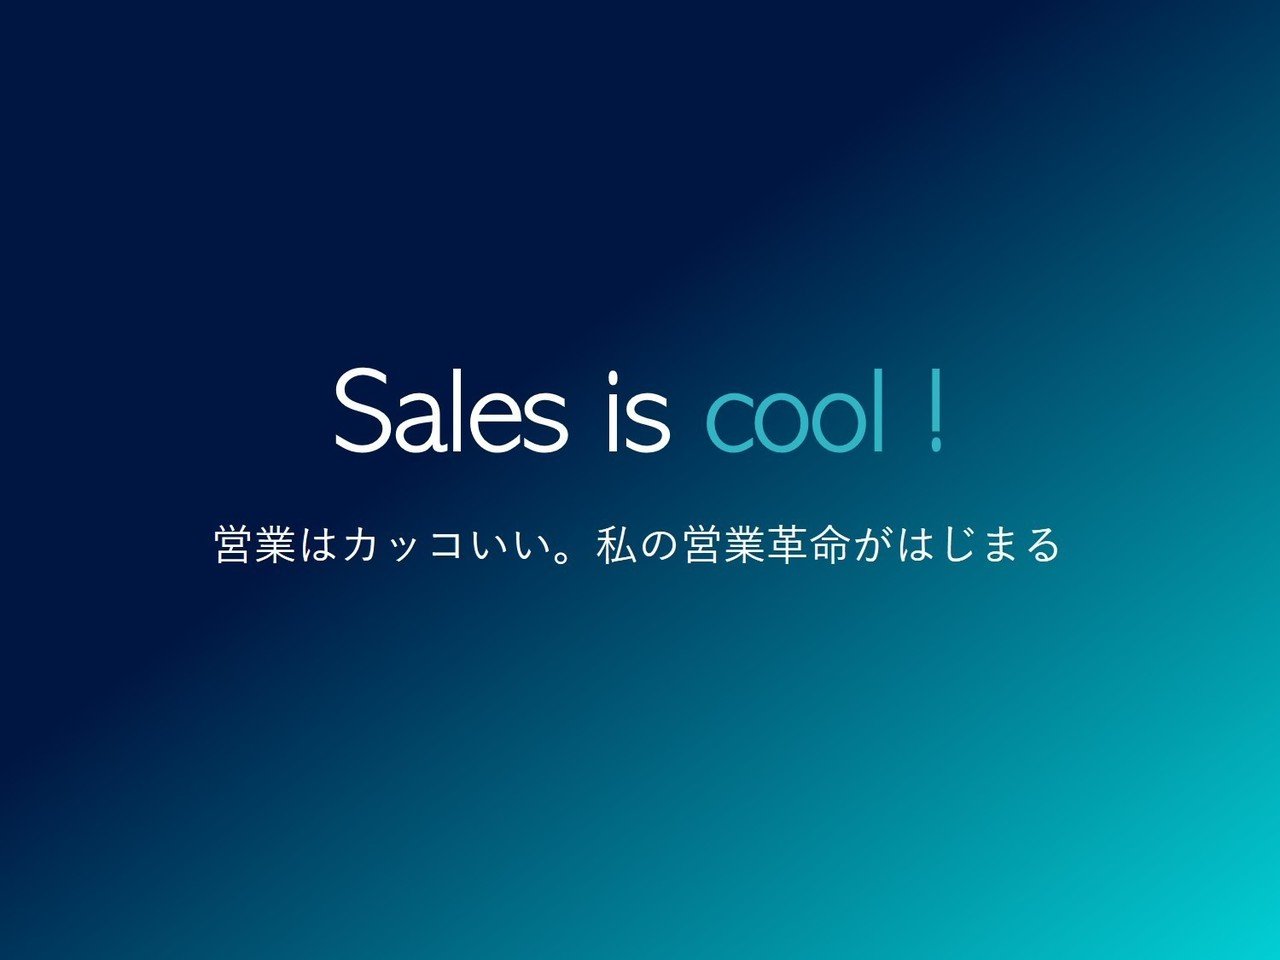 Sales is cool = 営業はカッコいい」のつくり方。私が考える未来の 